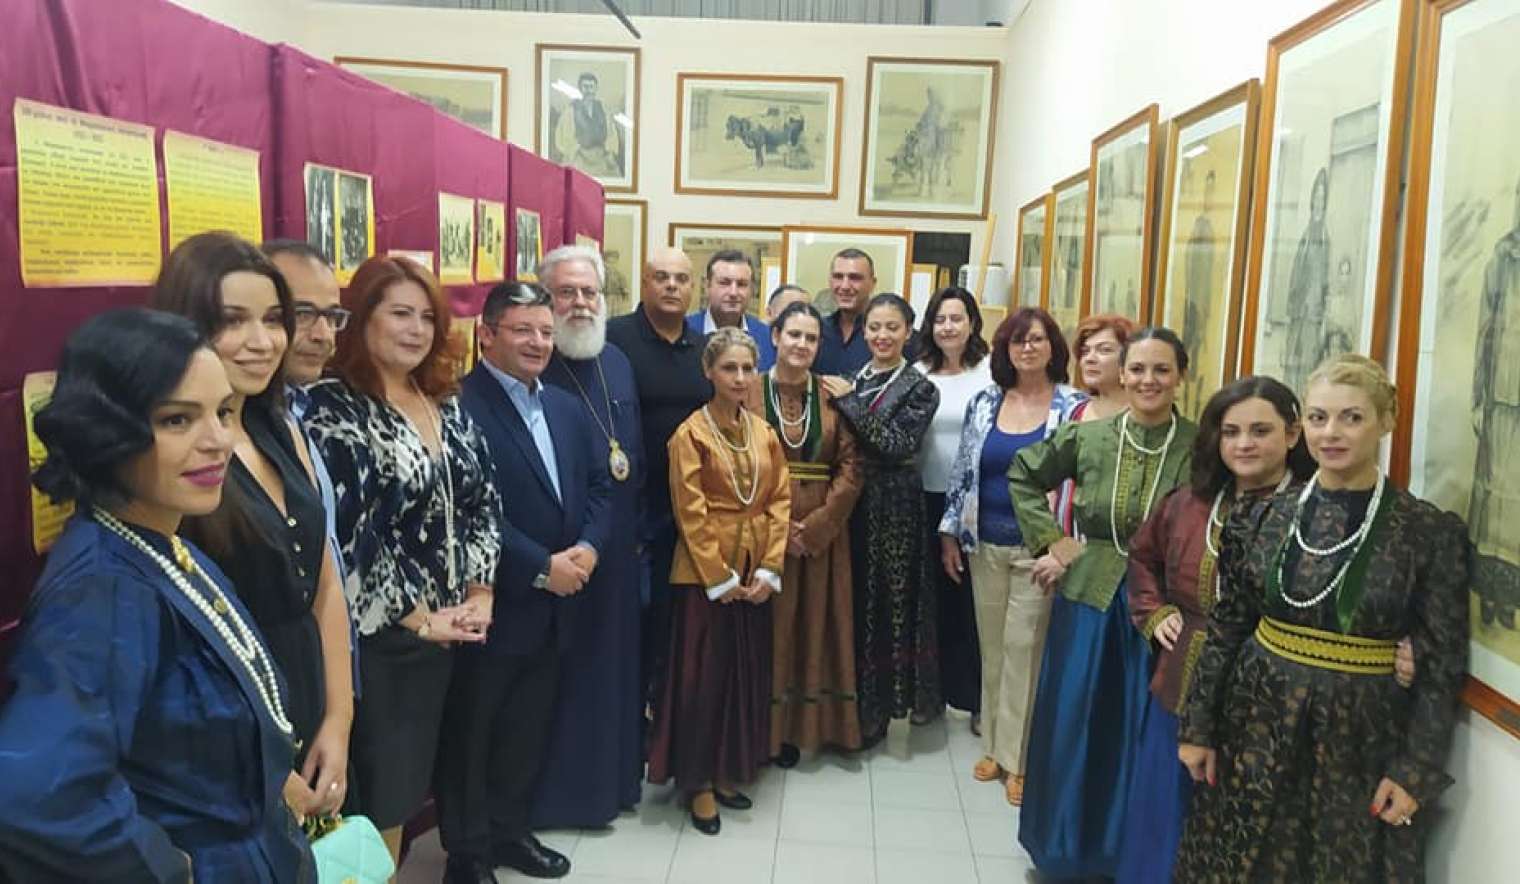 Ολοκληρώθηκαν με μεγάλη επιτυχία οι εκδηλώσεις μνήμης του Δήμου Αχαρνών για τα 100 χρόνια από τη Μικρασιατική Καταστροφή